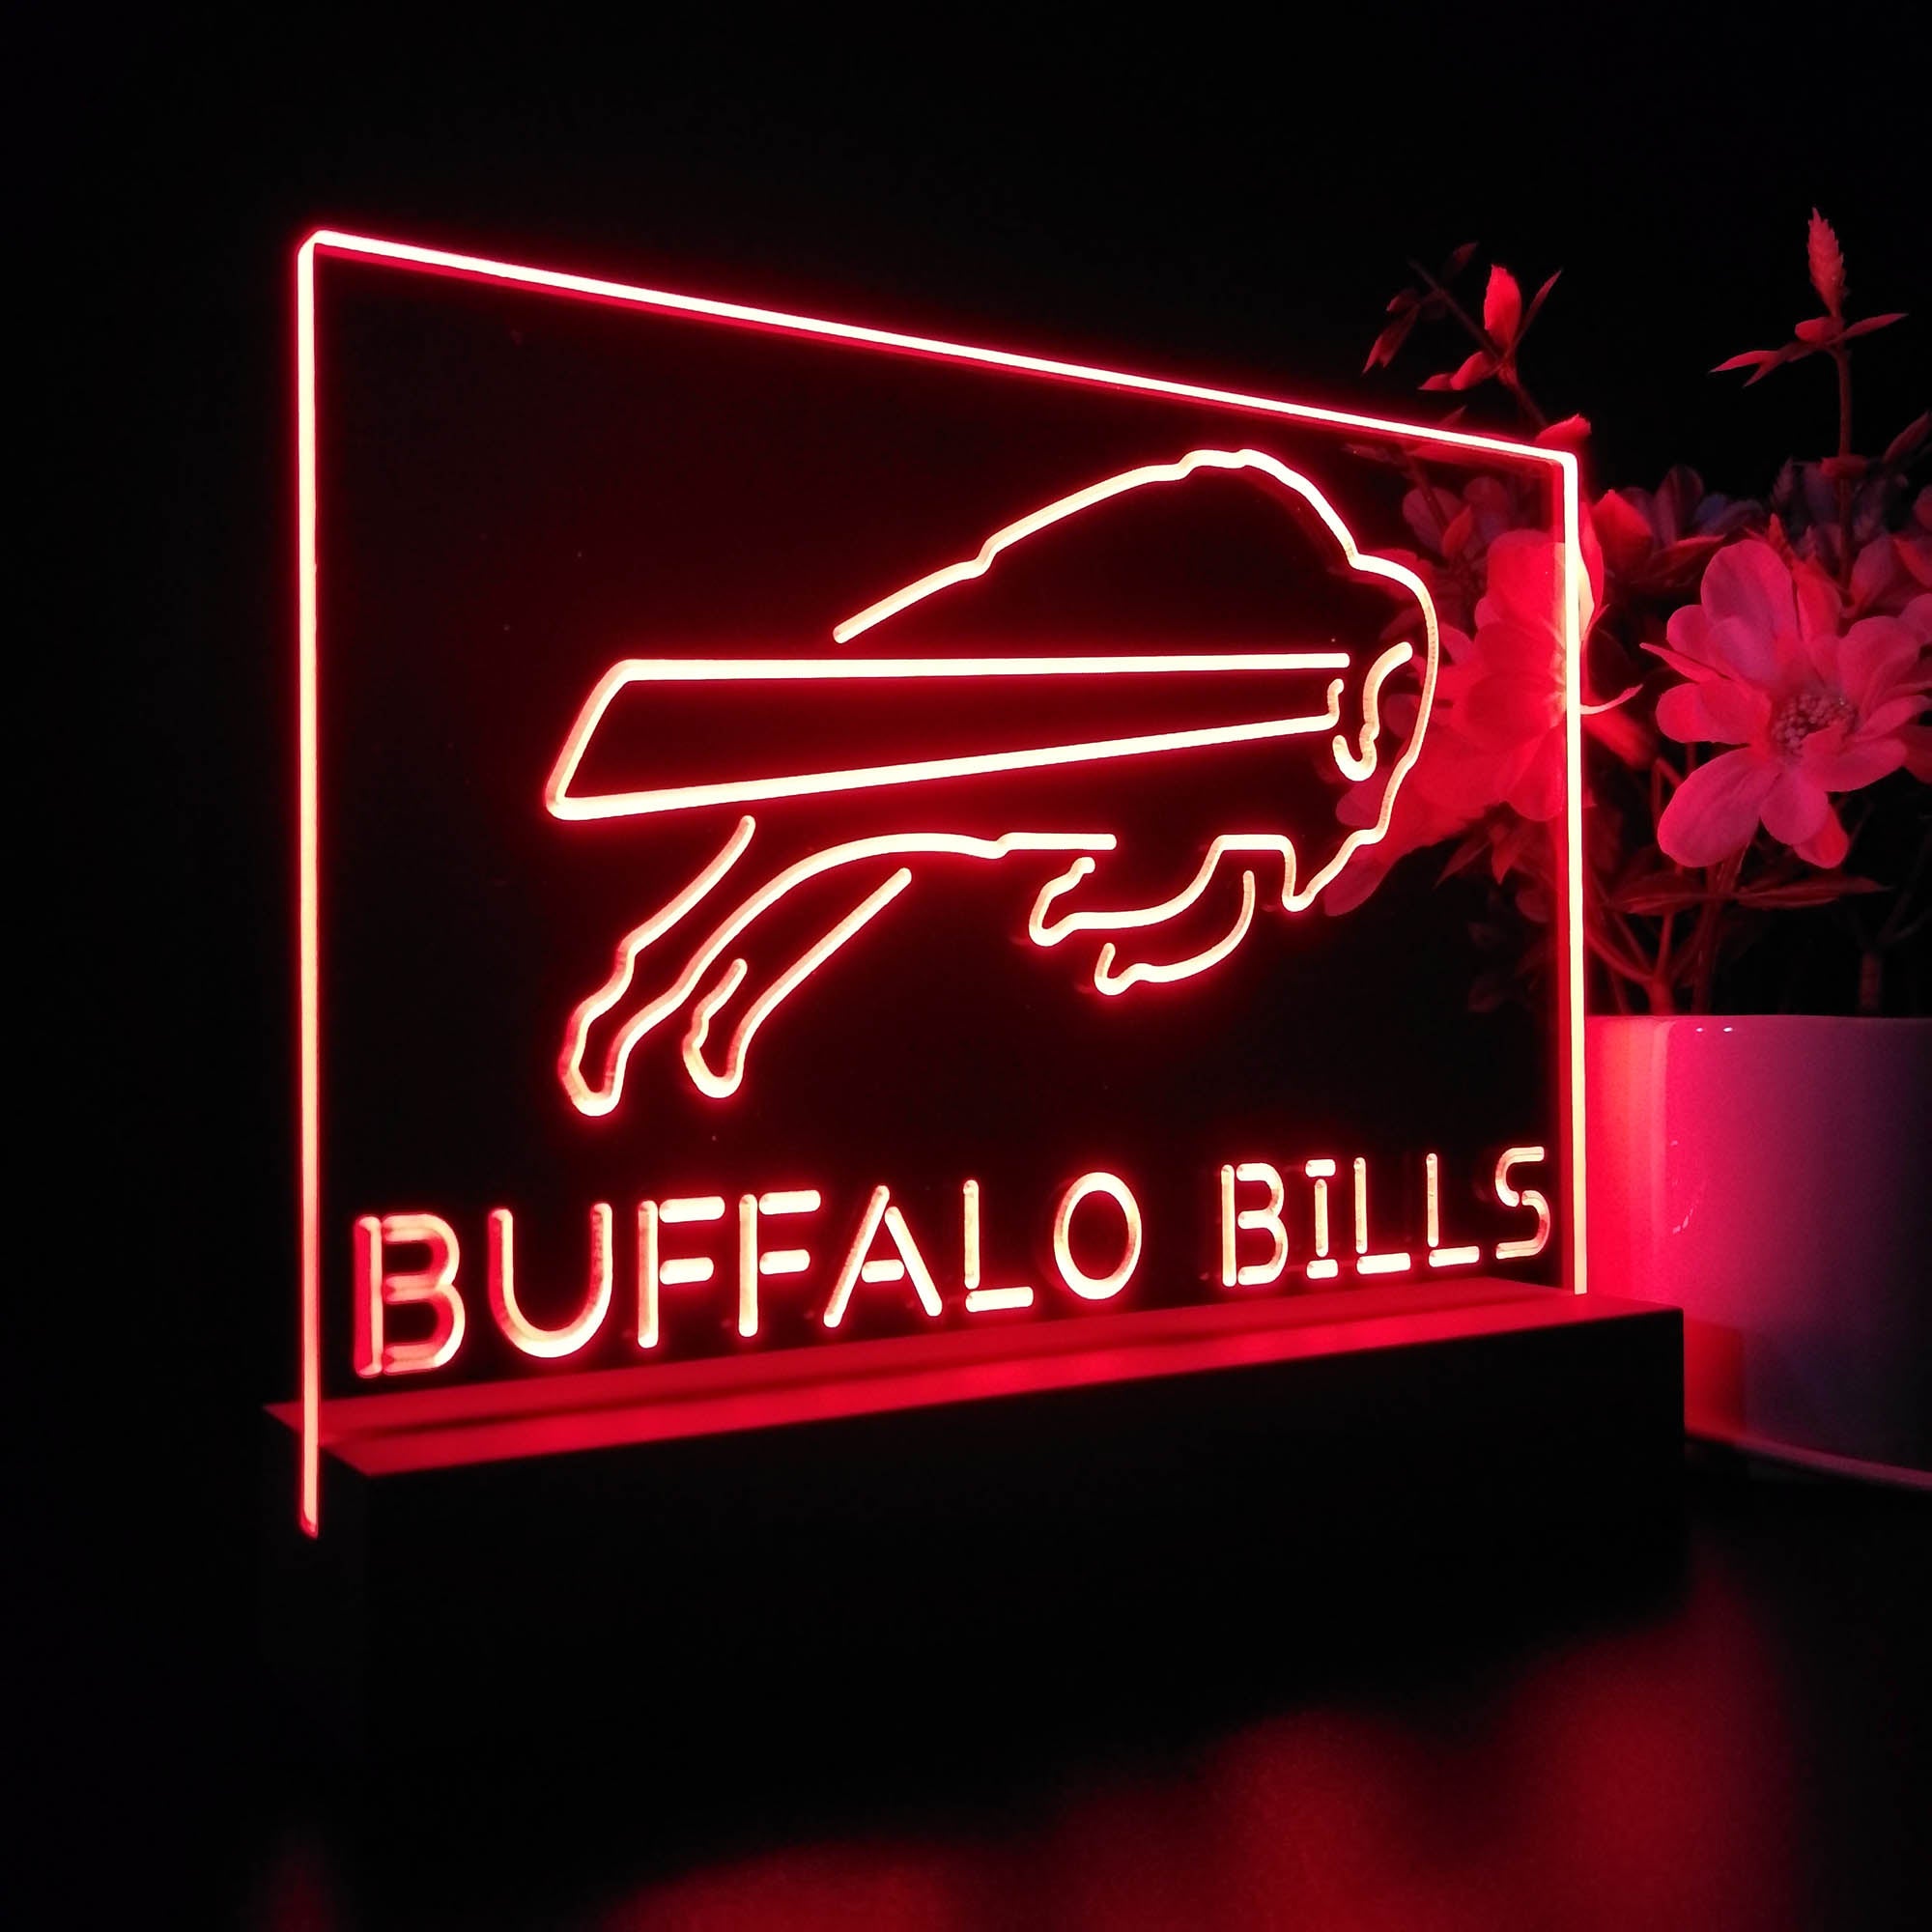 Buffalo Bills Neon Sign Pub Bar Lamp